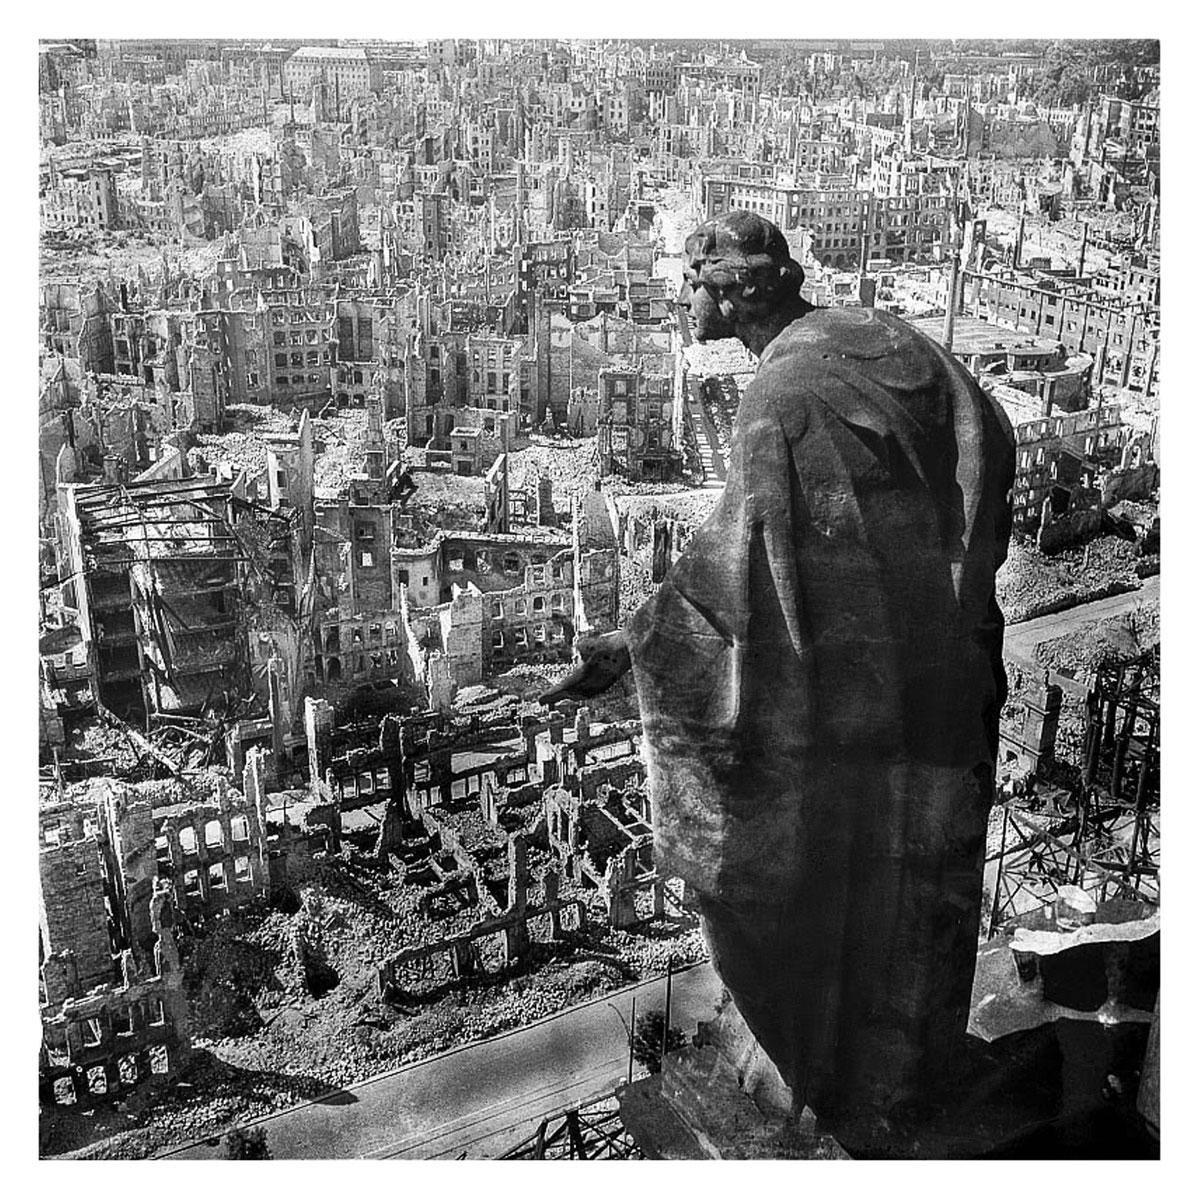 Dresden, 1945 'Er zat een rare, spookachtige schoonheid in de ruïnes.'